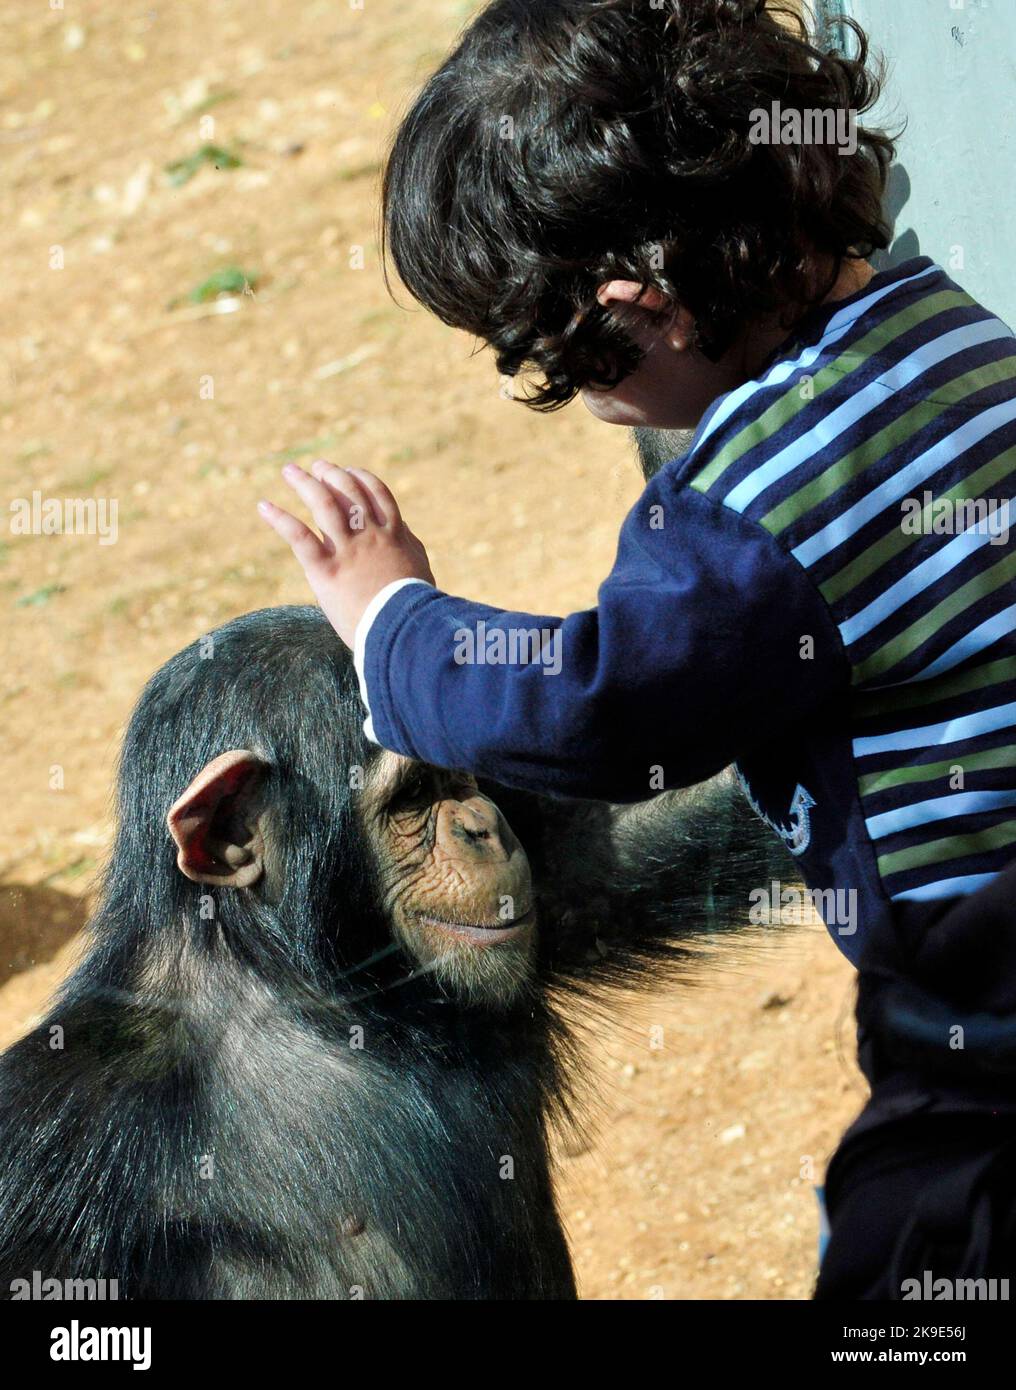 Ein Kleinkind und ein Schimpansen gucken und interagieren miteinander. Stockfoto